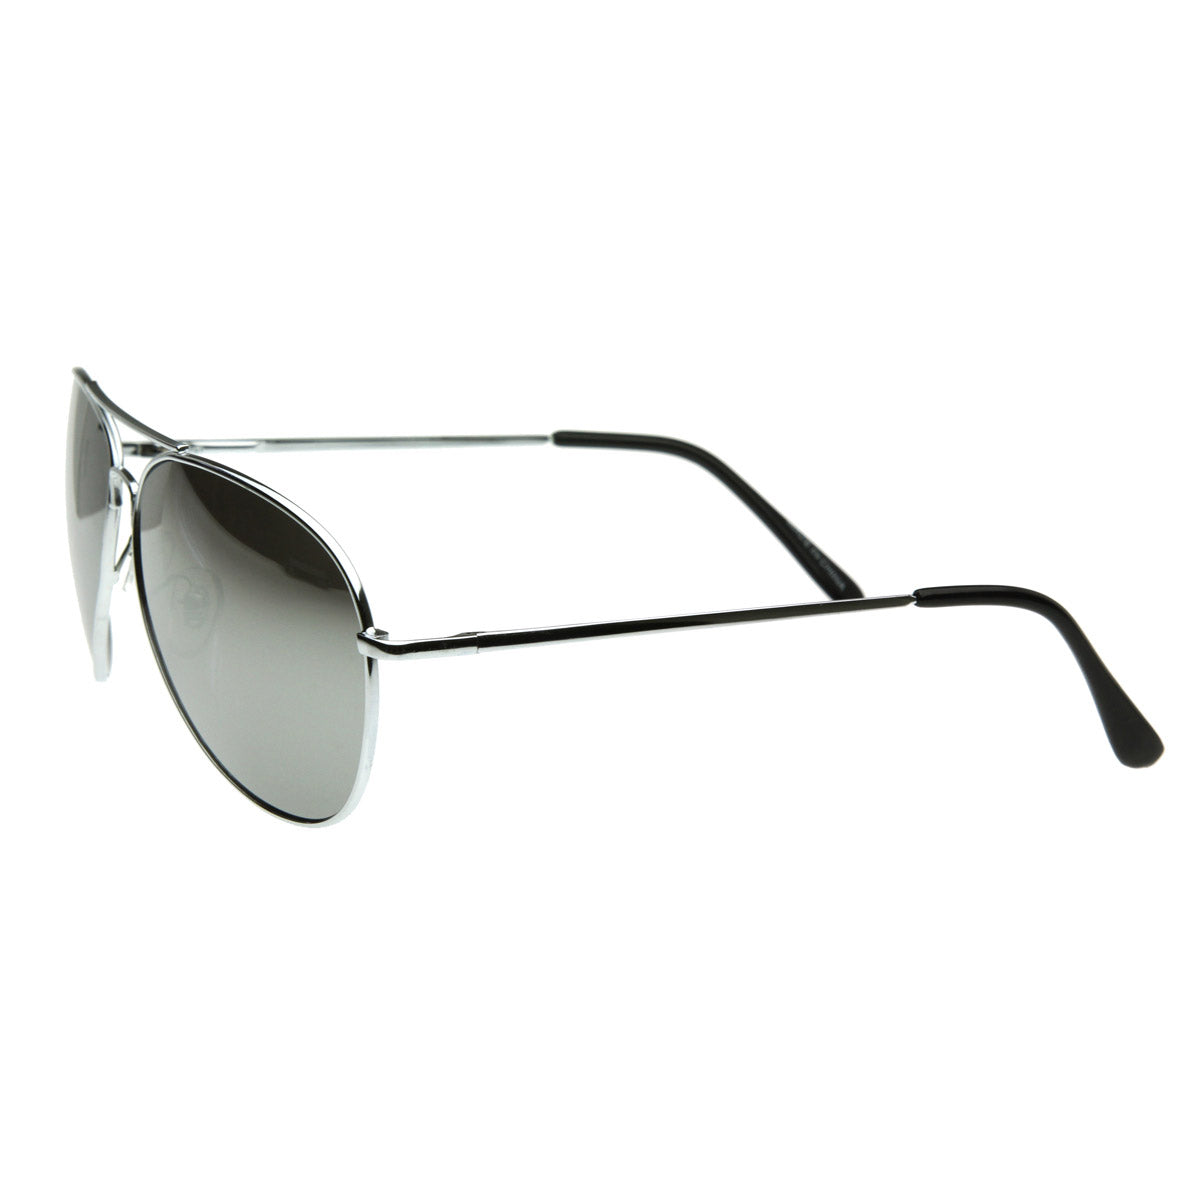 FULL MIRROR Mirrored Metal Sunglasses Aviator